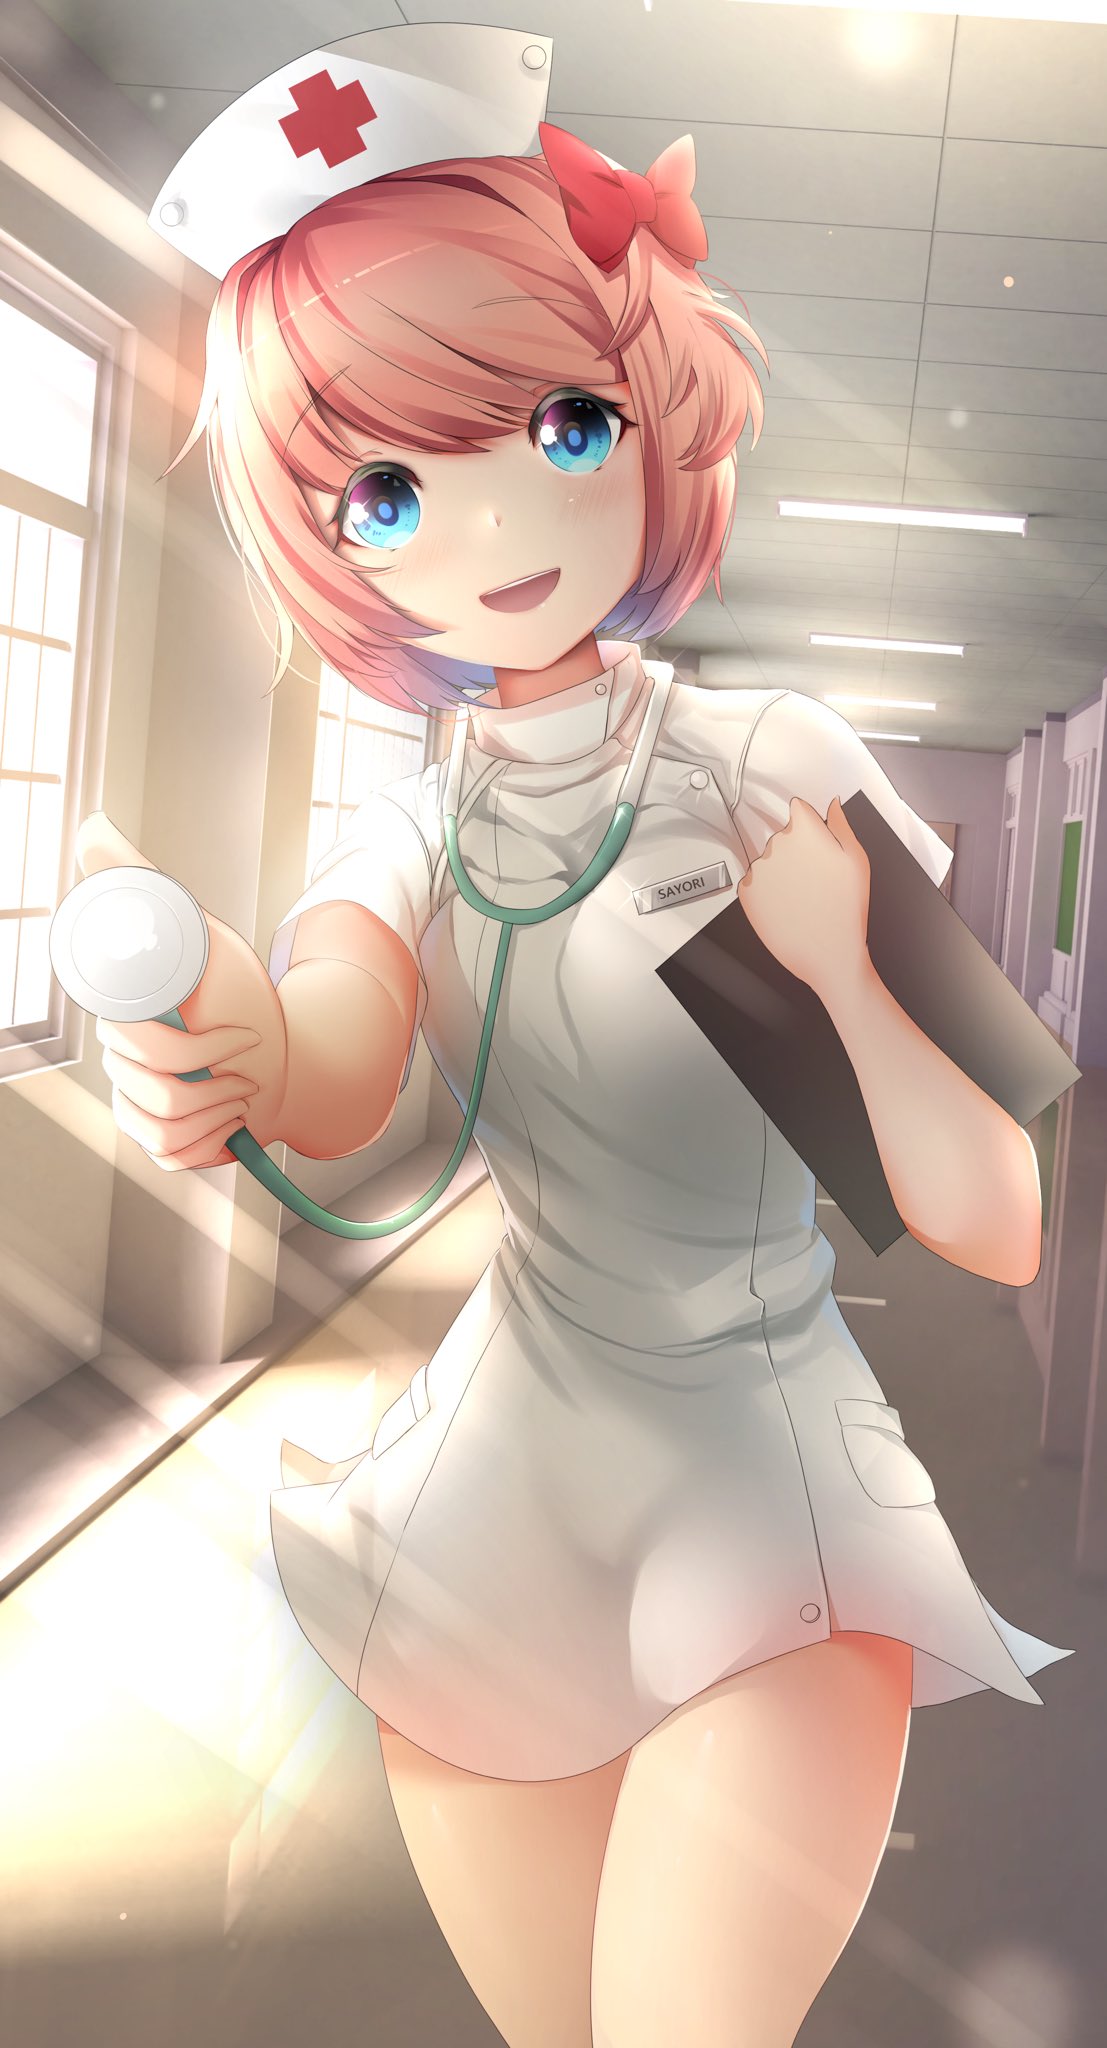 Nurse Sayori (Nurse_Sayori@) / Twitter